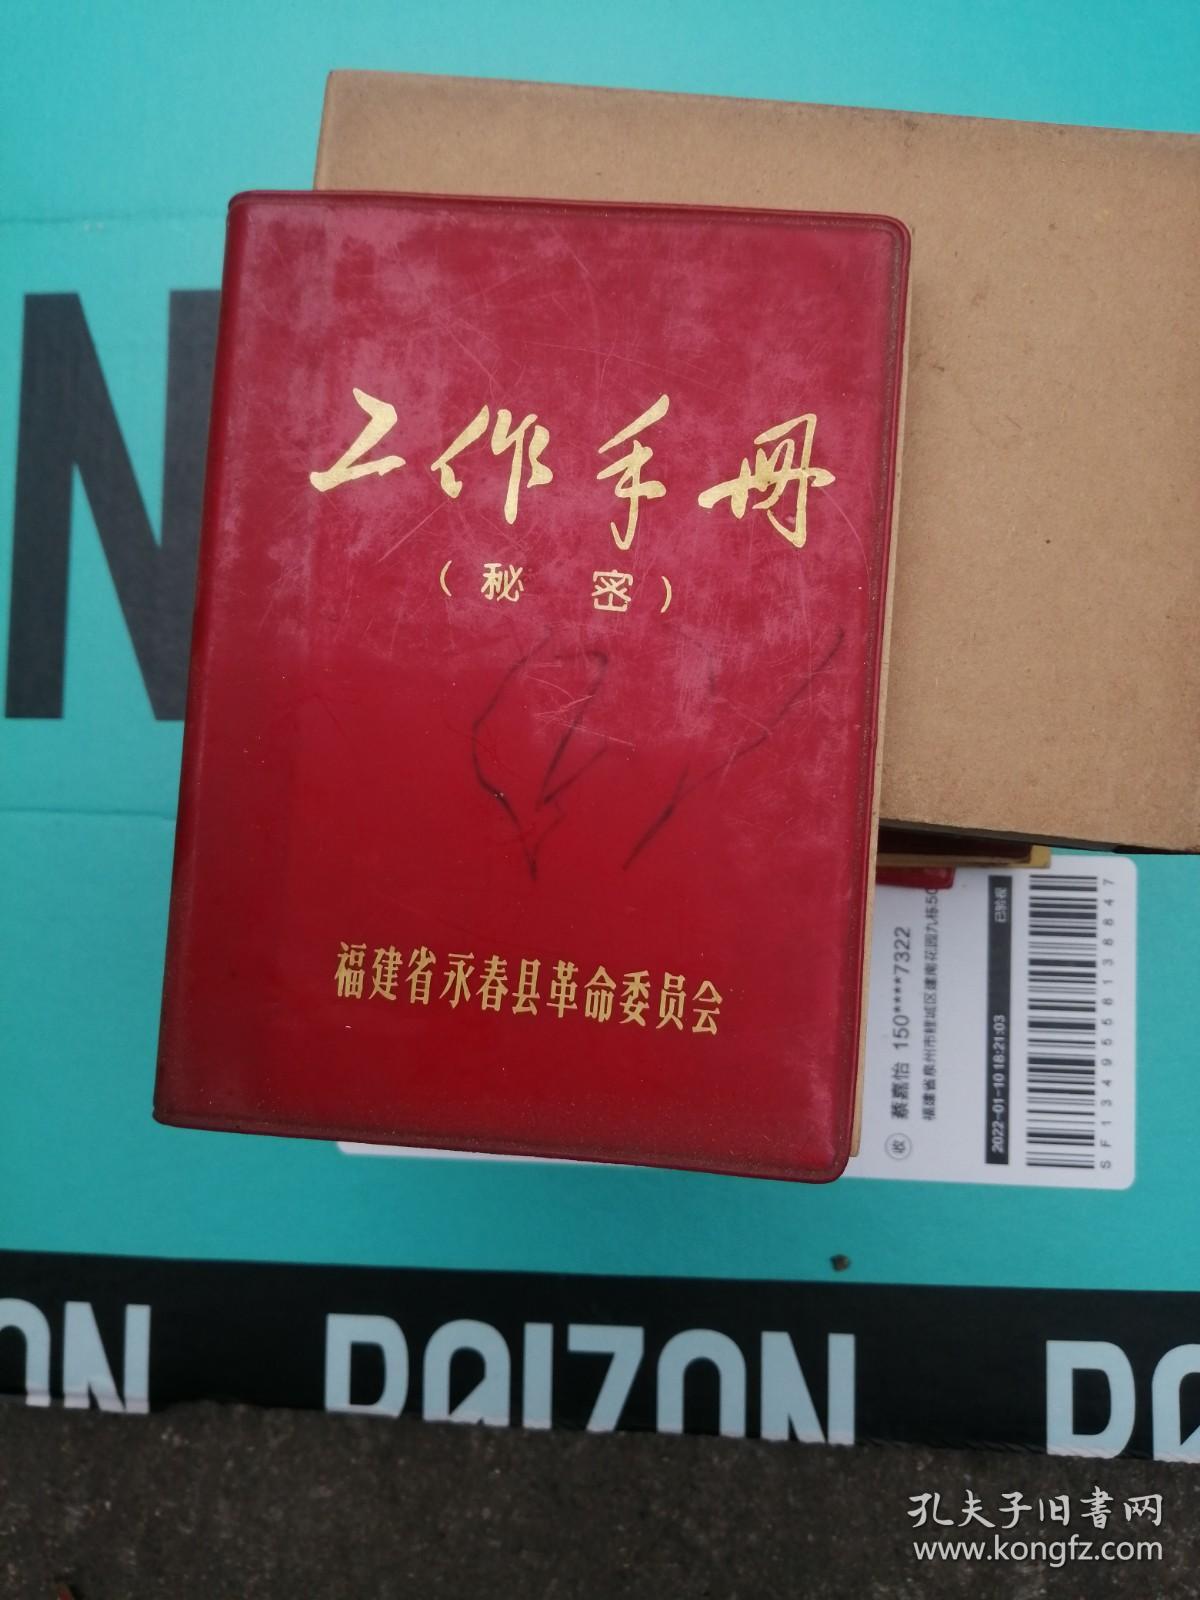 毛泽东选集 一卷本